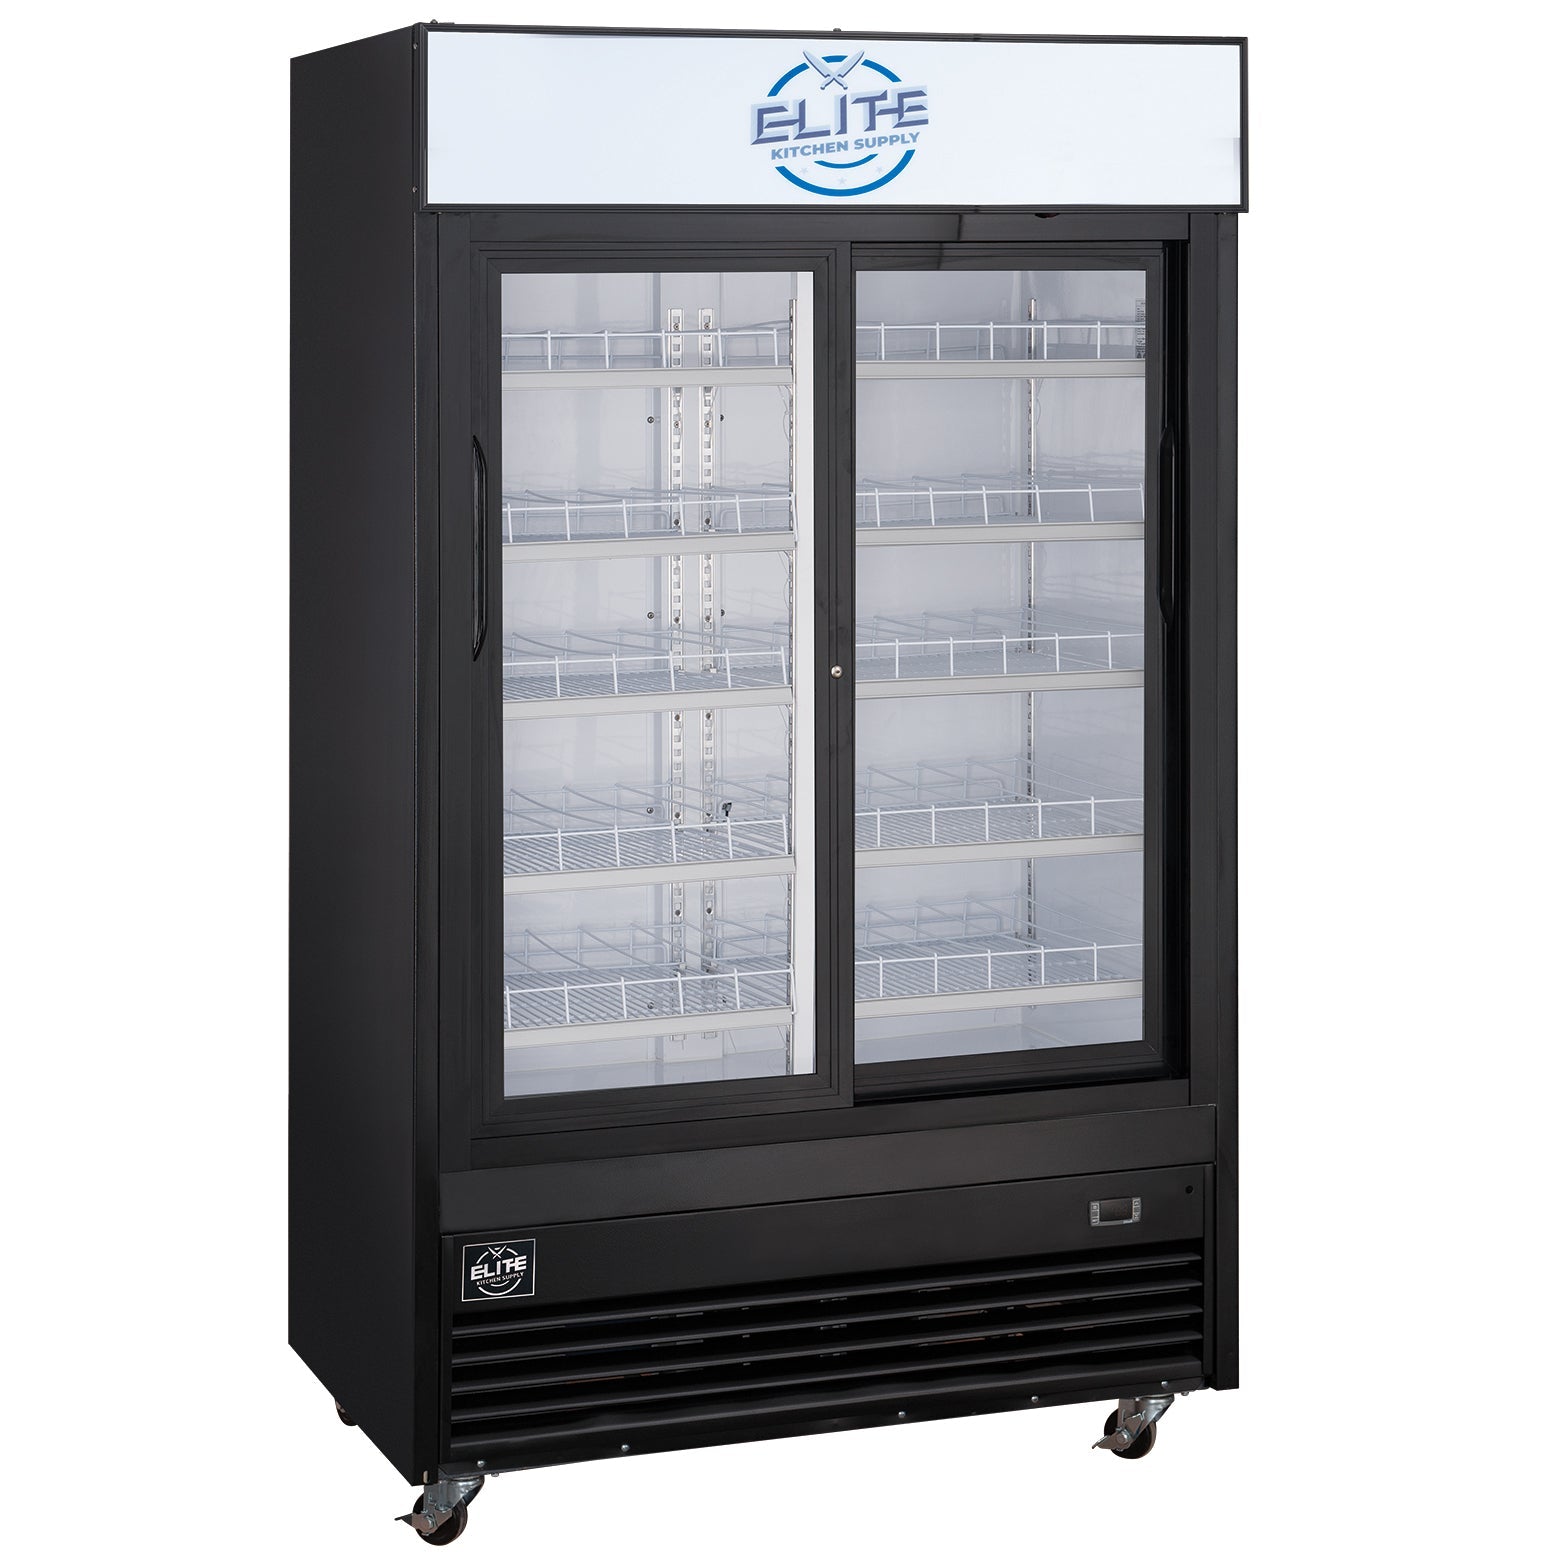 ESM-41SR 2-Door Merchandiser Refrigerator